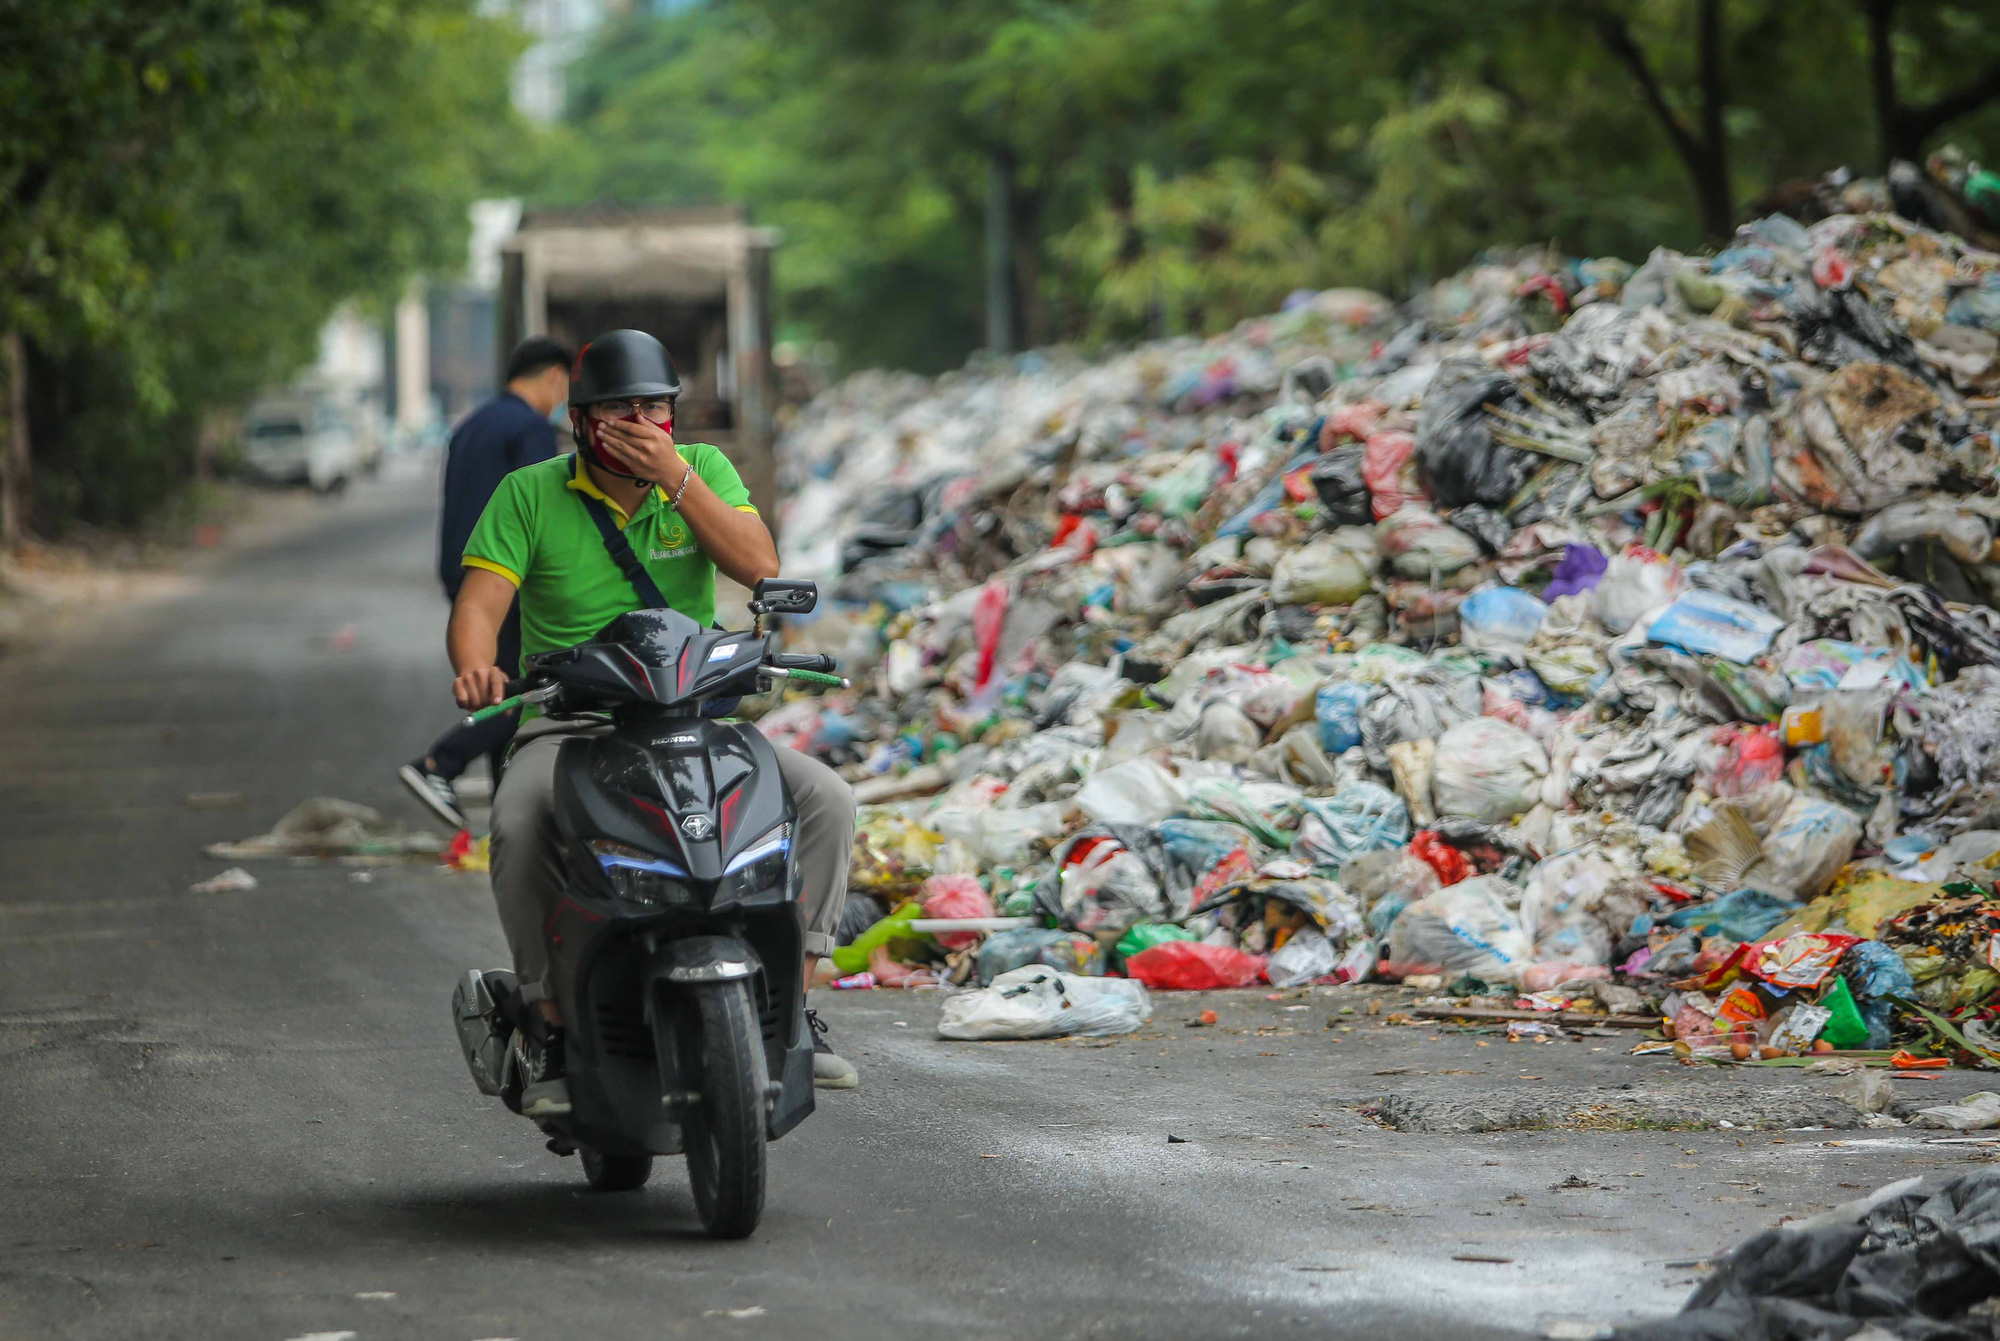 Hãy xem hình ảnh về rác thải để nhận thức rõ ràng hơn về tầm quan trọng của công tác xử lý chúng. Những hình ảnh này cũng sẽ giúp chúng ta biết được cách thức xử lý rác thải một cách hiệu quả và thiết thực nhất.